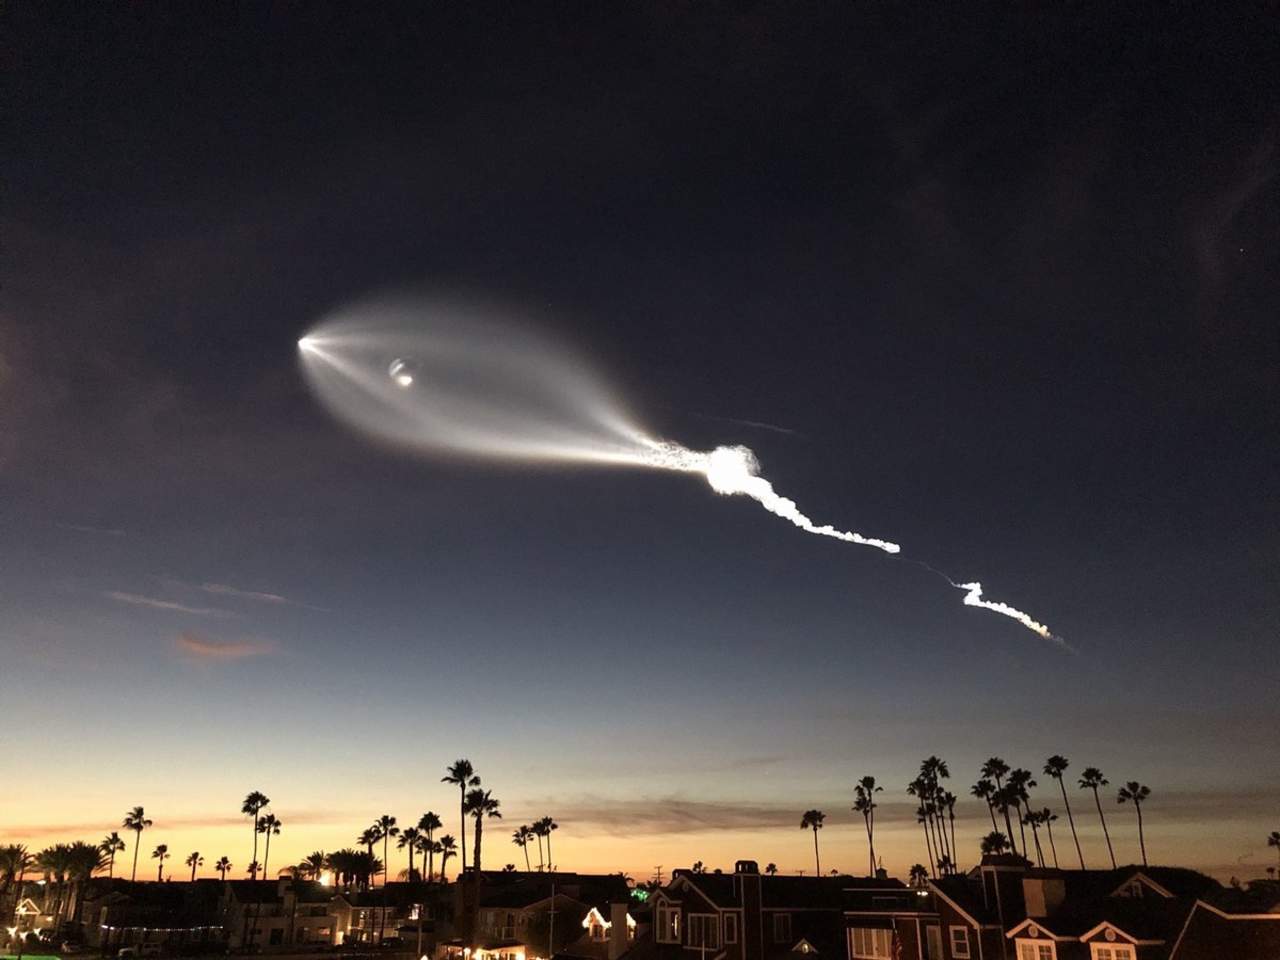 El cohete propulsor Falcon 9 despegó desde la Base Vandenberg de la Fuerza Aérea poco después de las 5:30 de la tarde, llevando consigo la serie más reciente de satélites para Iridium Communications. (ESPECIAL)
